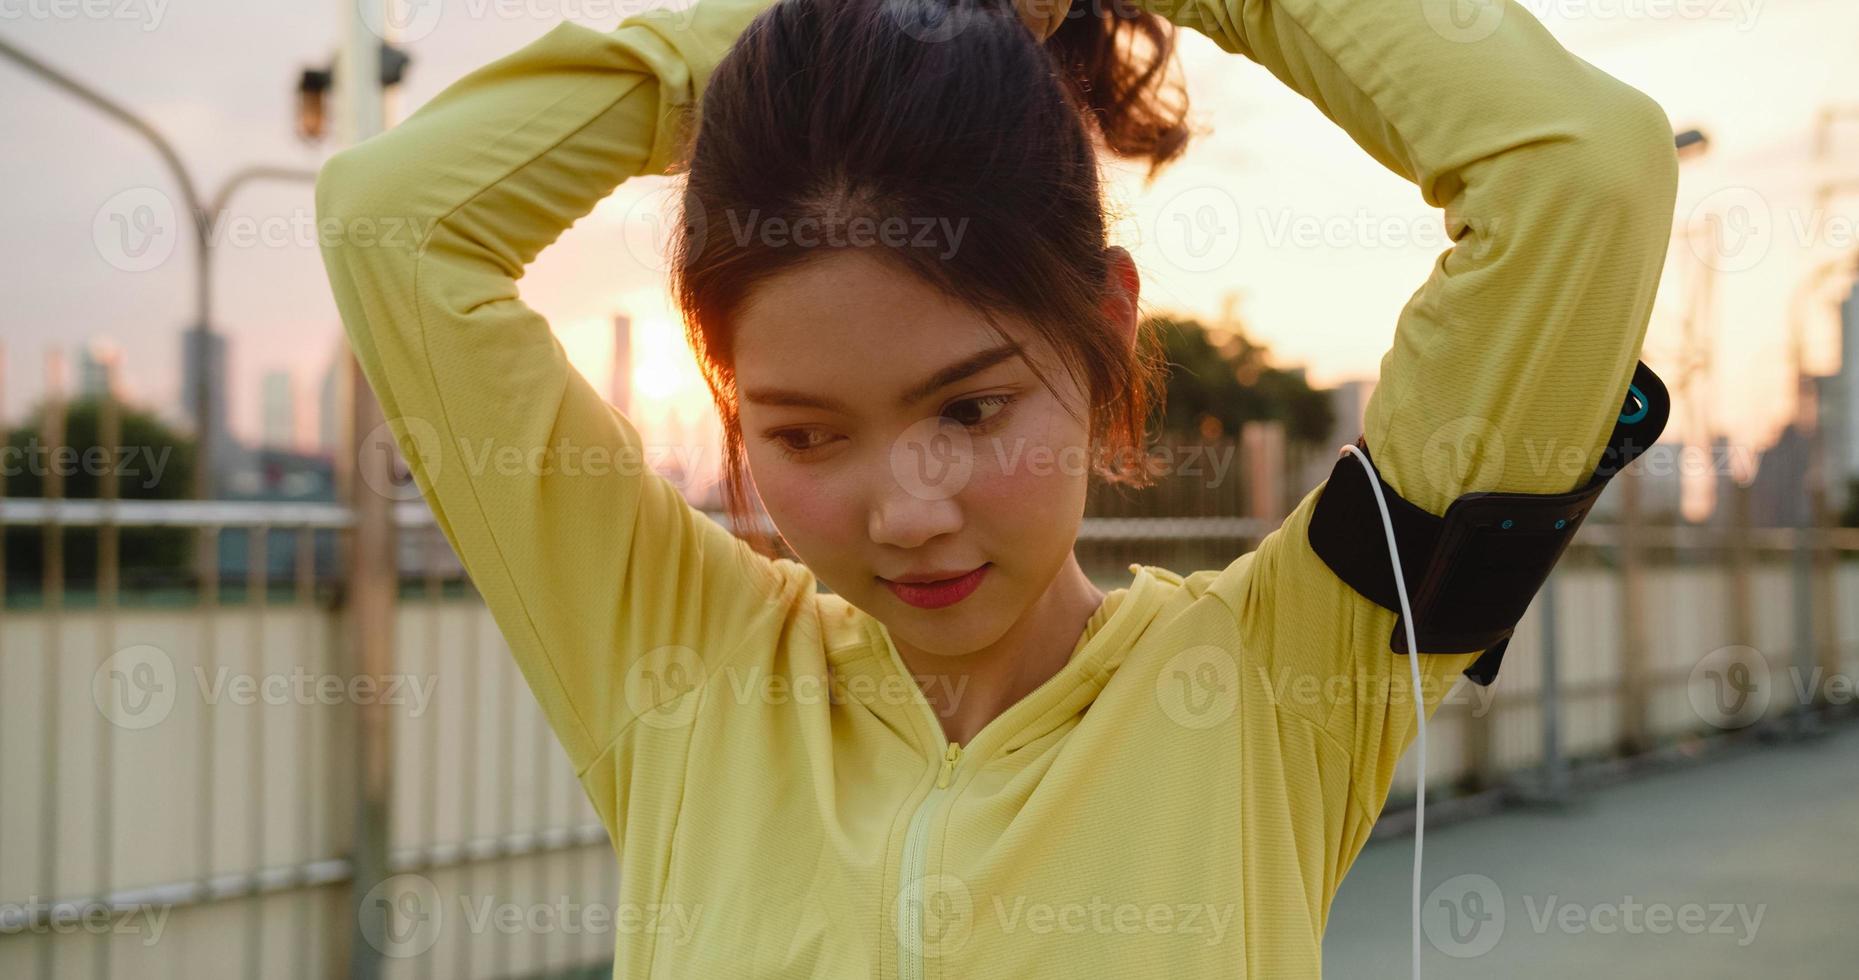 glückliche junge asiatische Sportlerin in gelber Kleidung, die sich auf das Training im städtischen Umfeld vorbereitet. Koreanisches Teenie-Mädchen, das sich Pferdeschwanzhaare bindet und sich vor ihrem Training auf der Gehwegbrücke am frühen Morgen fertig macht foto